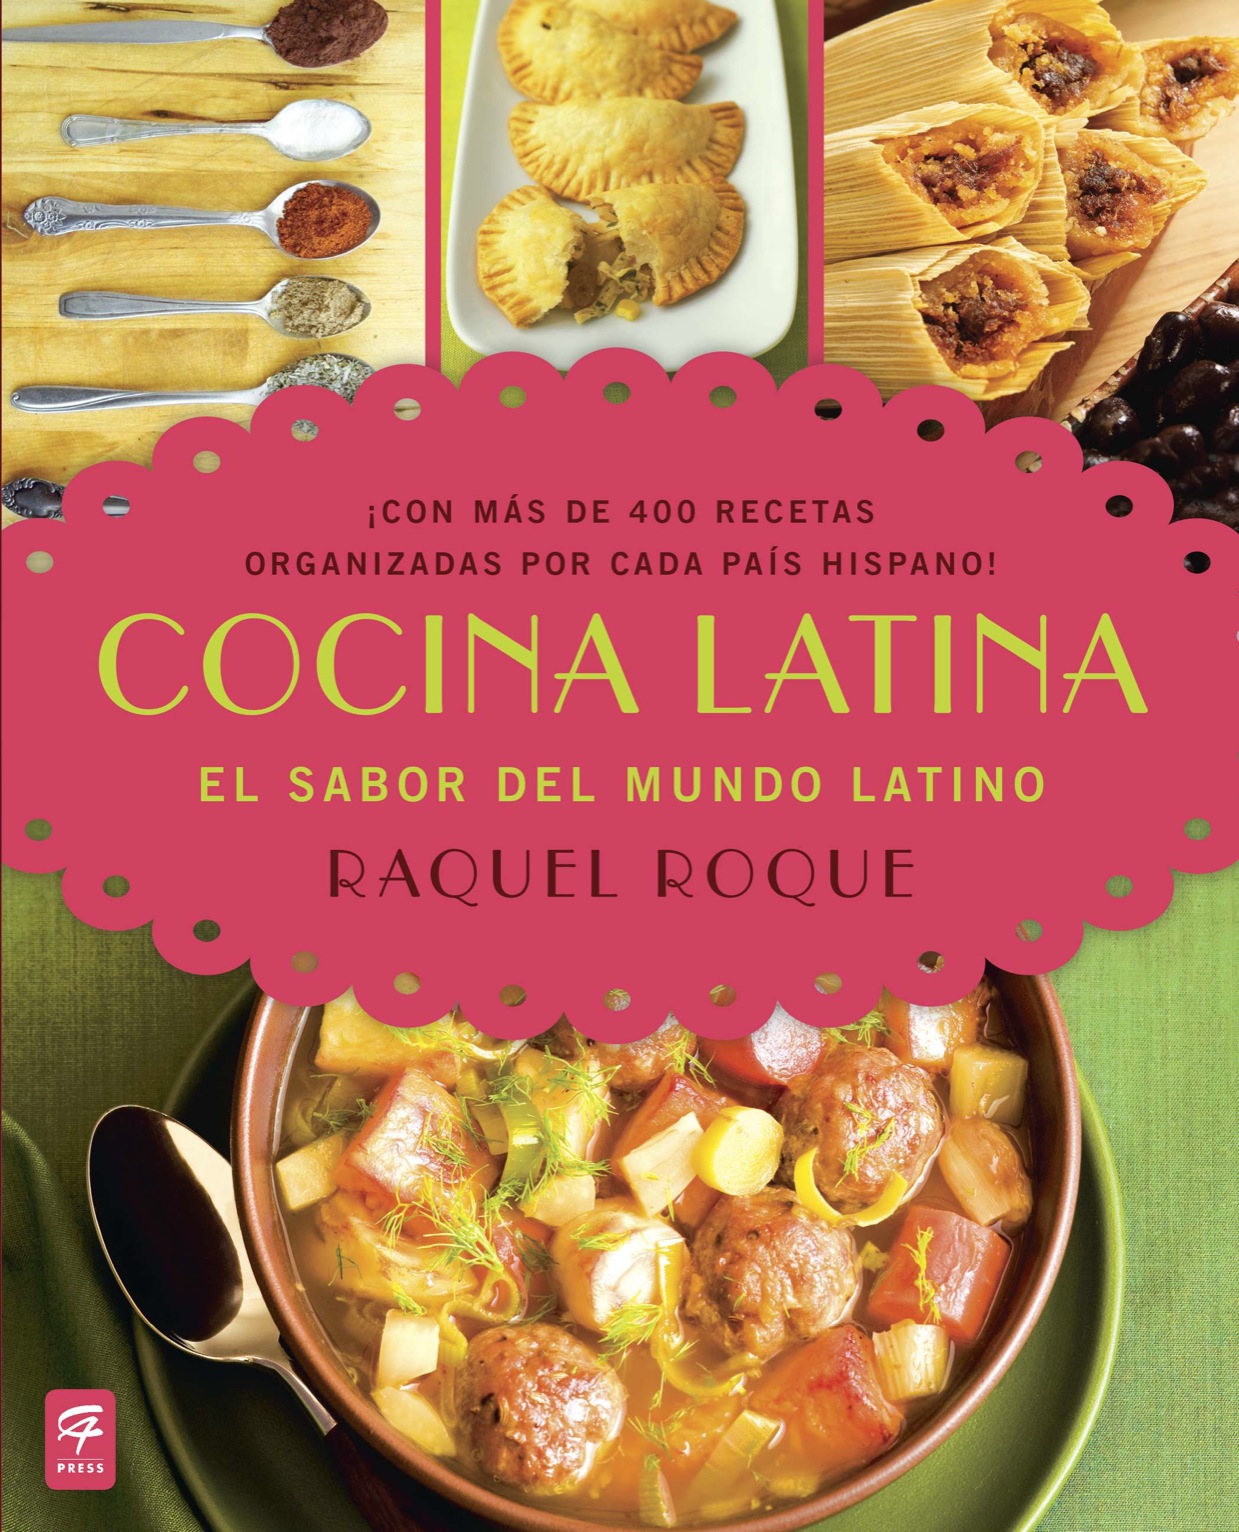 Cocina latina el sabor del mundo latino - image 1